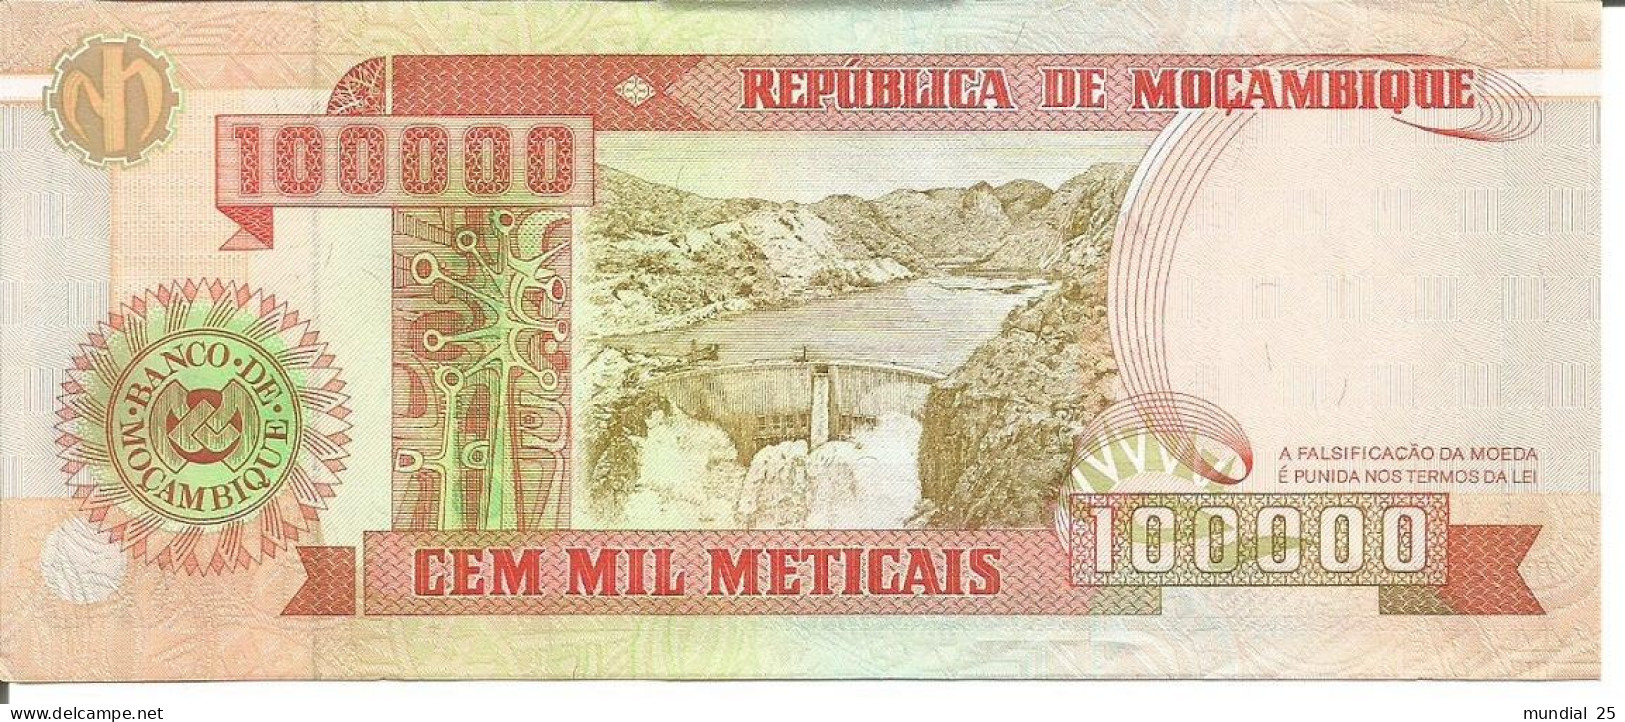 2 MOZAMBIQUE NOTES 100.000 METICAIS 16/06/1993 (1994) - Moçambique